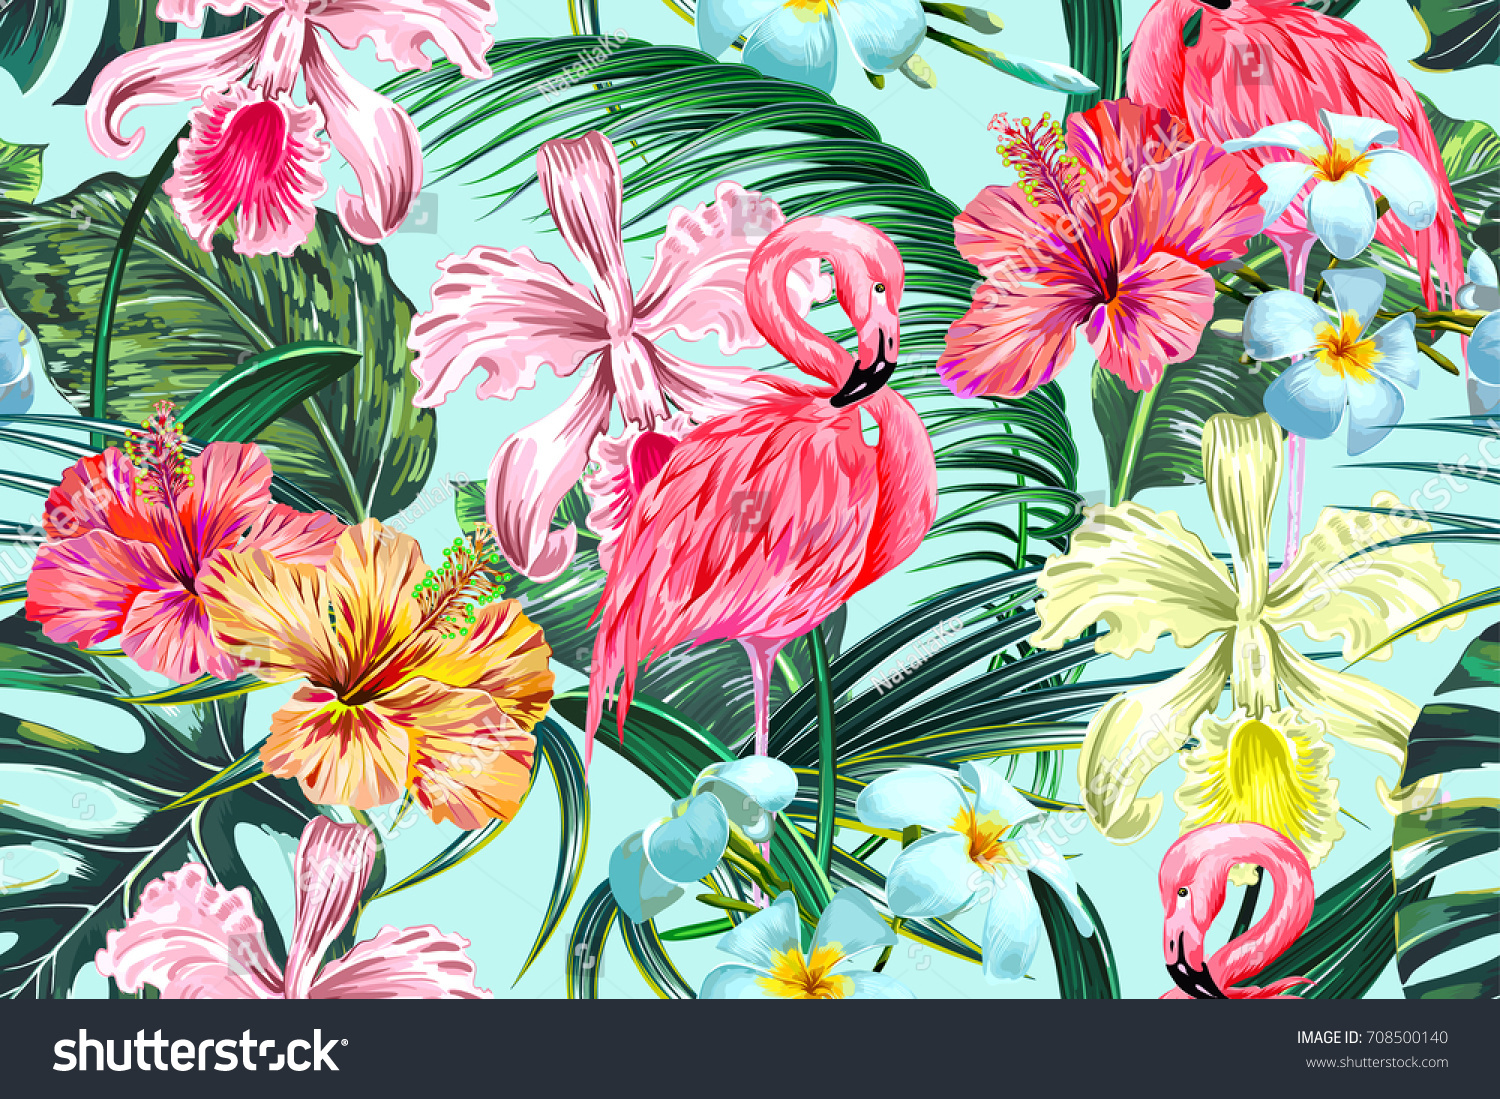 エキゾチックな花 ヤシの葉 ジャングルの葉 ハイビスカス ランの花 ピンクのフラミンゴスを持つ花柄のシームレスなベクター画像熱帯のパターン背景 ボタニカル壁紙 ハワイ風のイラトス のベクター画像素材 ロイヤリティフリー Shutterstock